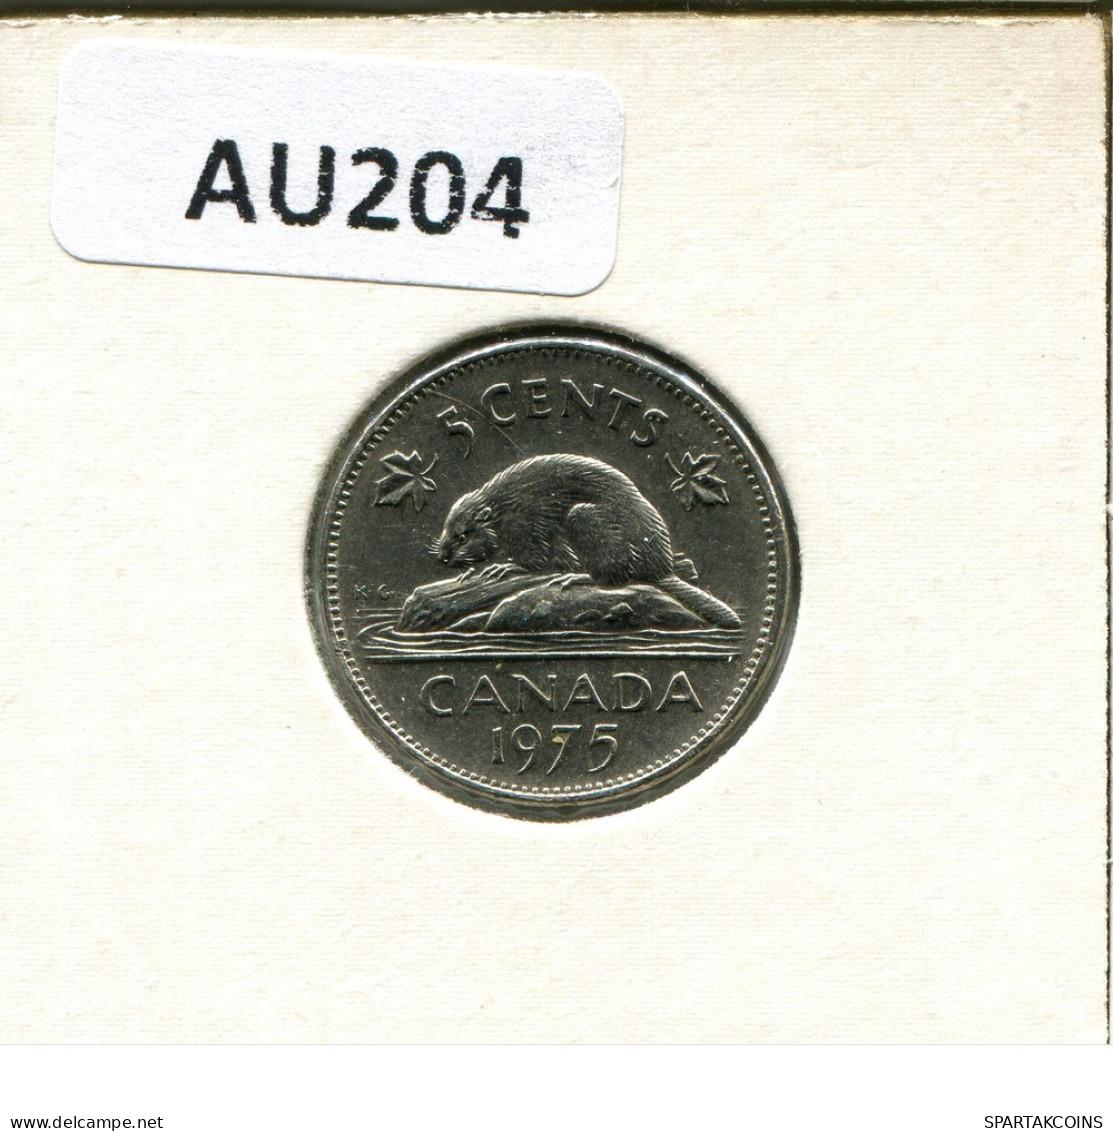 5 CENT 1975 CANADA Moneda #AU204.E.A - Canada